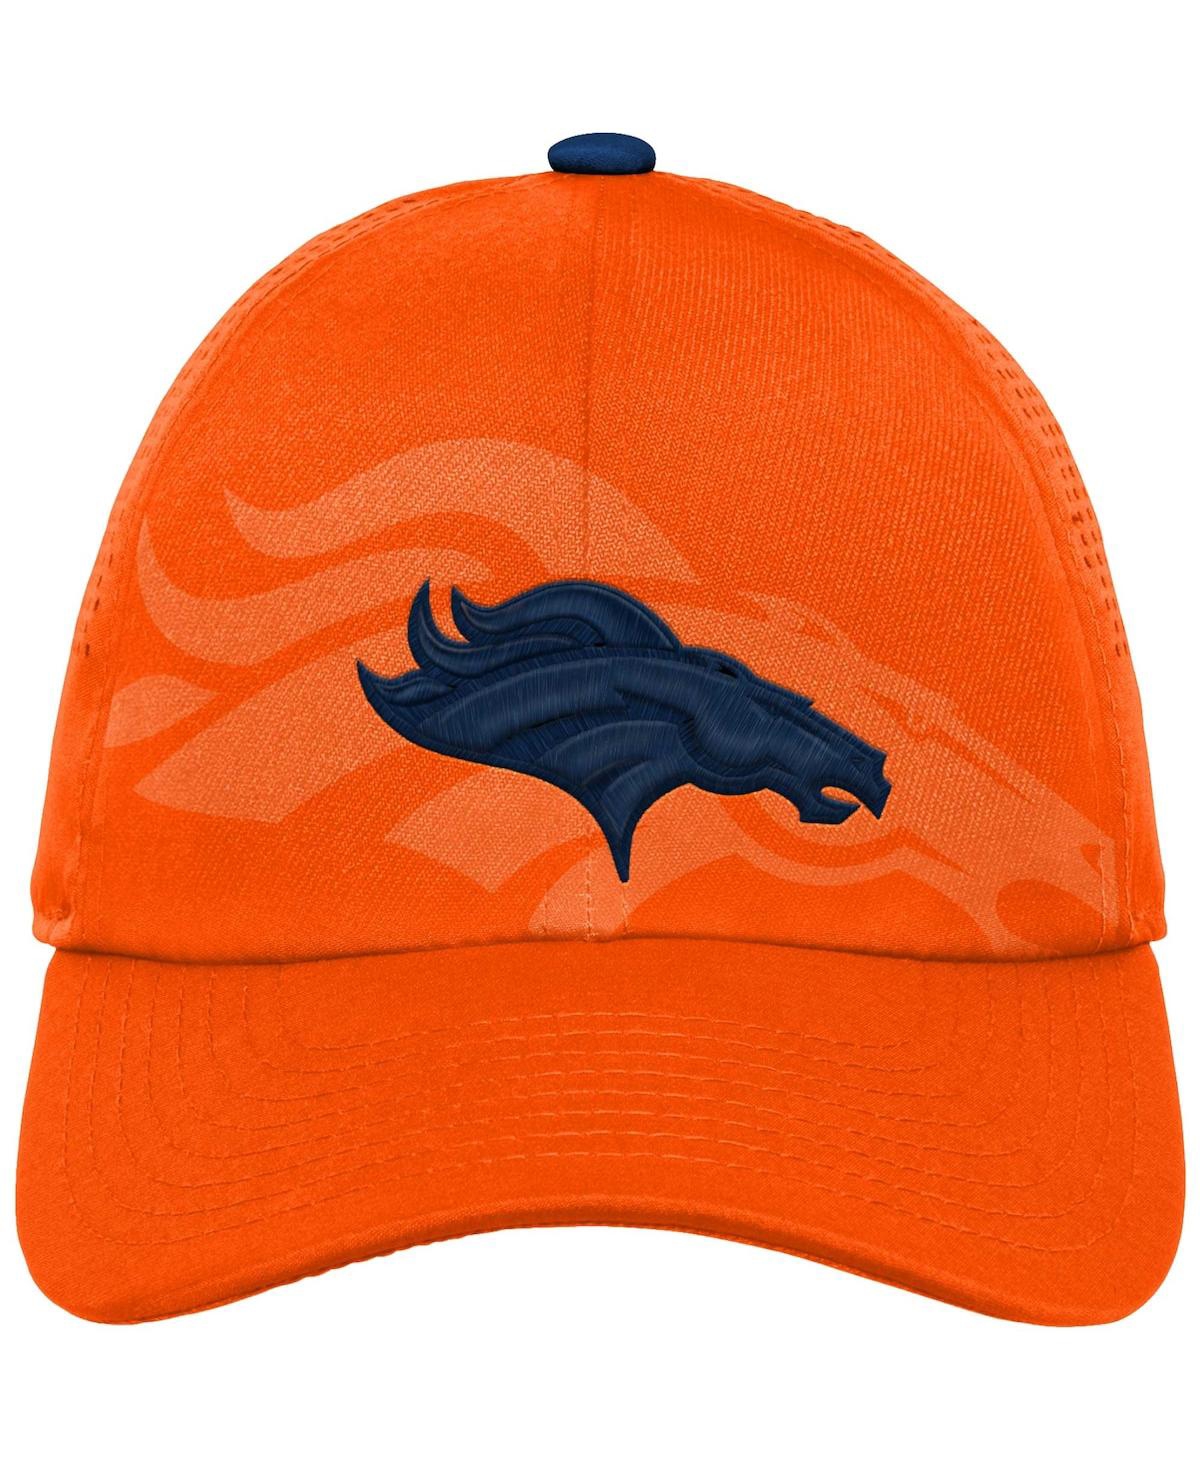 Shop Outerstuff Big Boys And Girls Orange Denver Broncos Tailgate Adjustable Hat